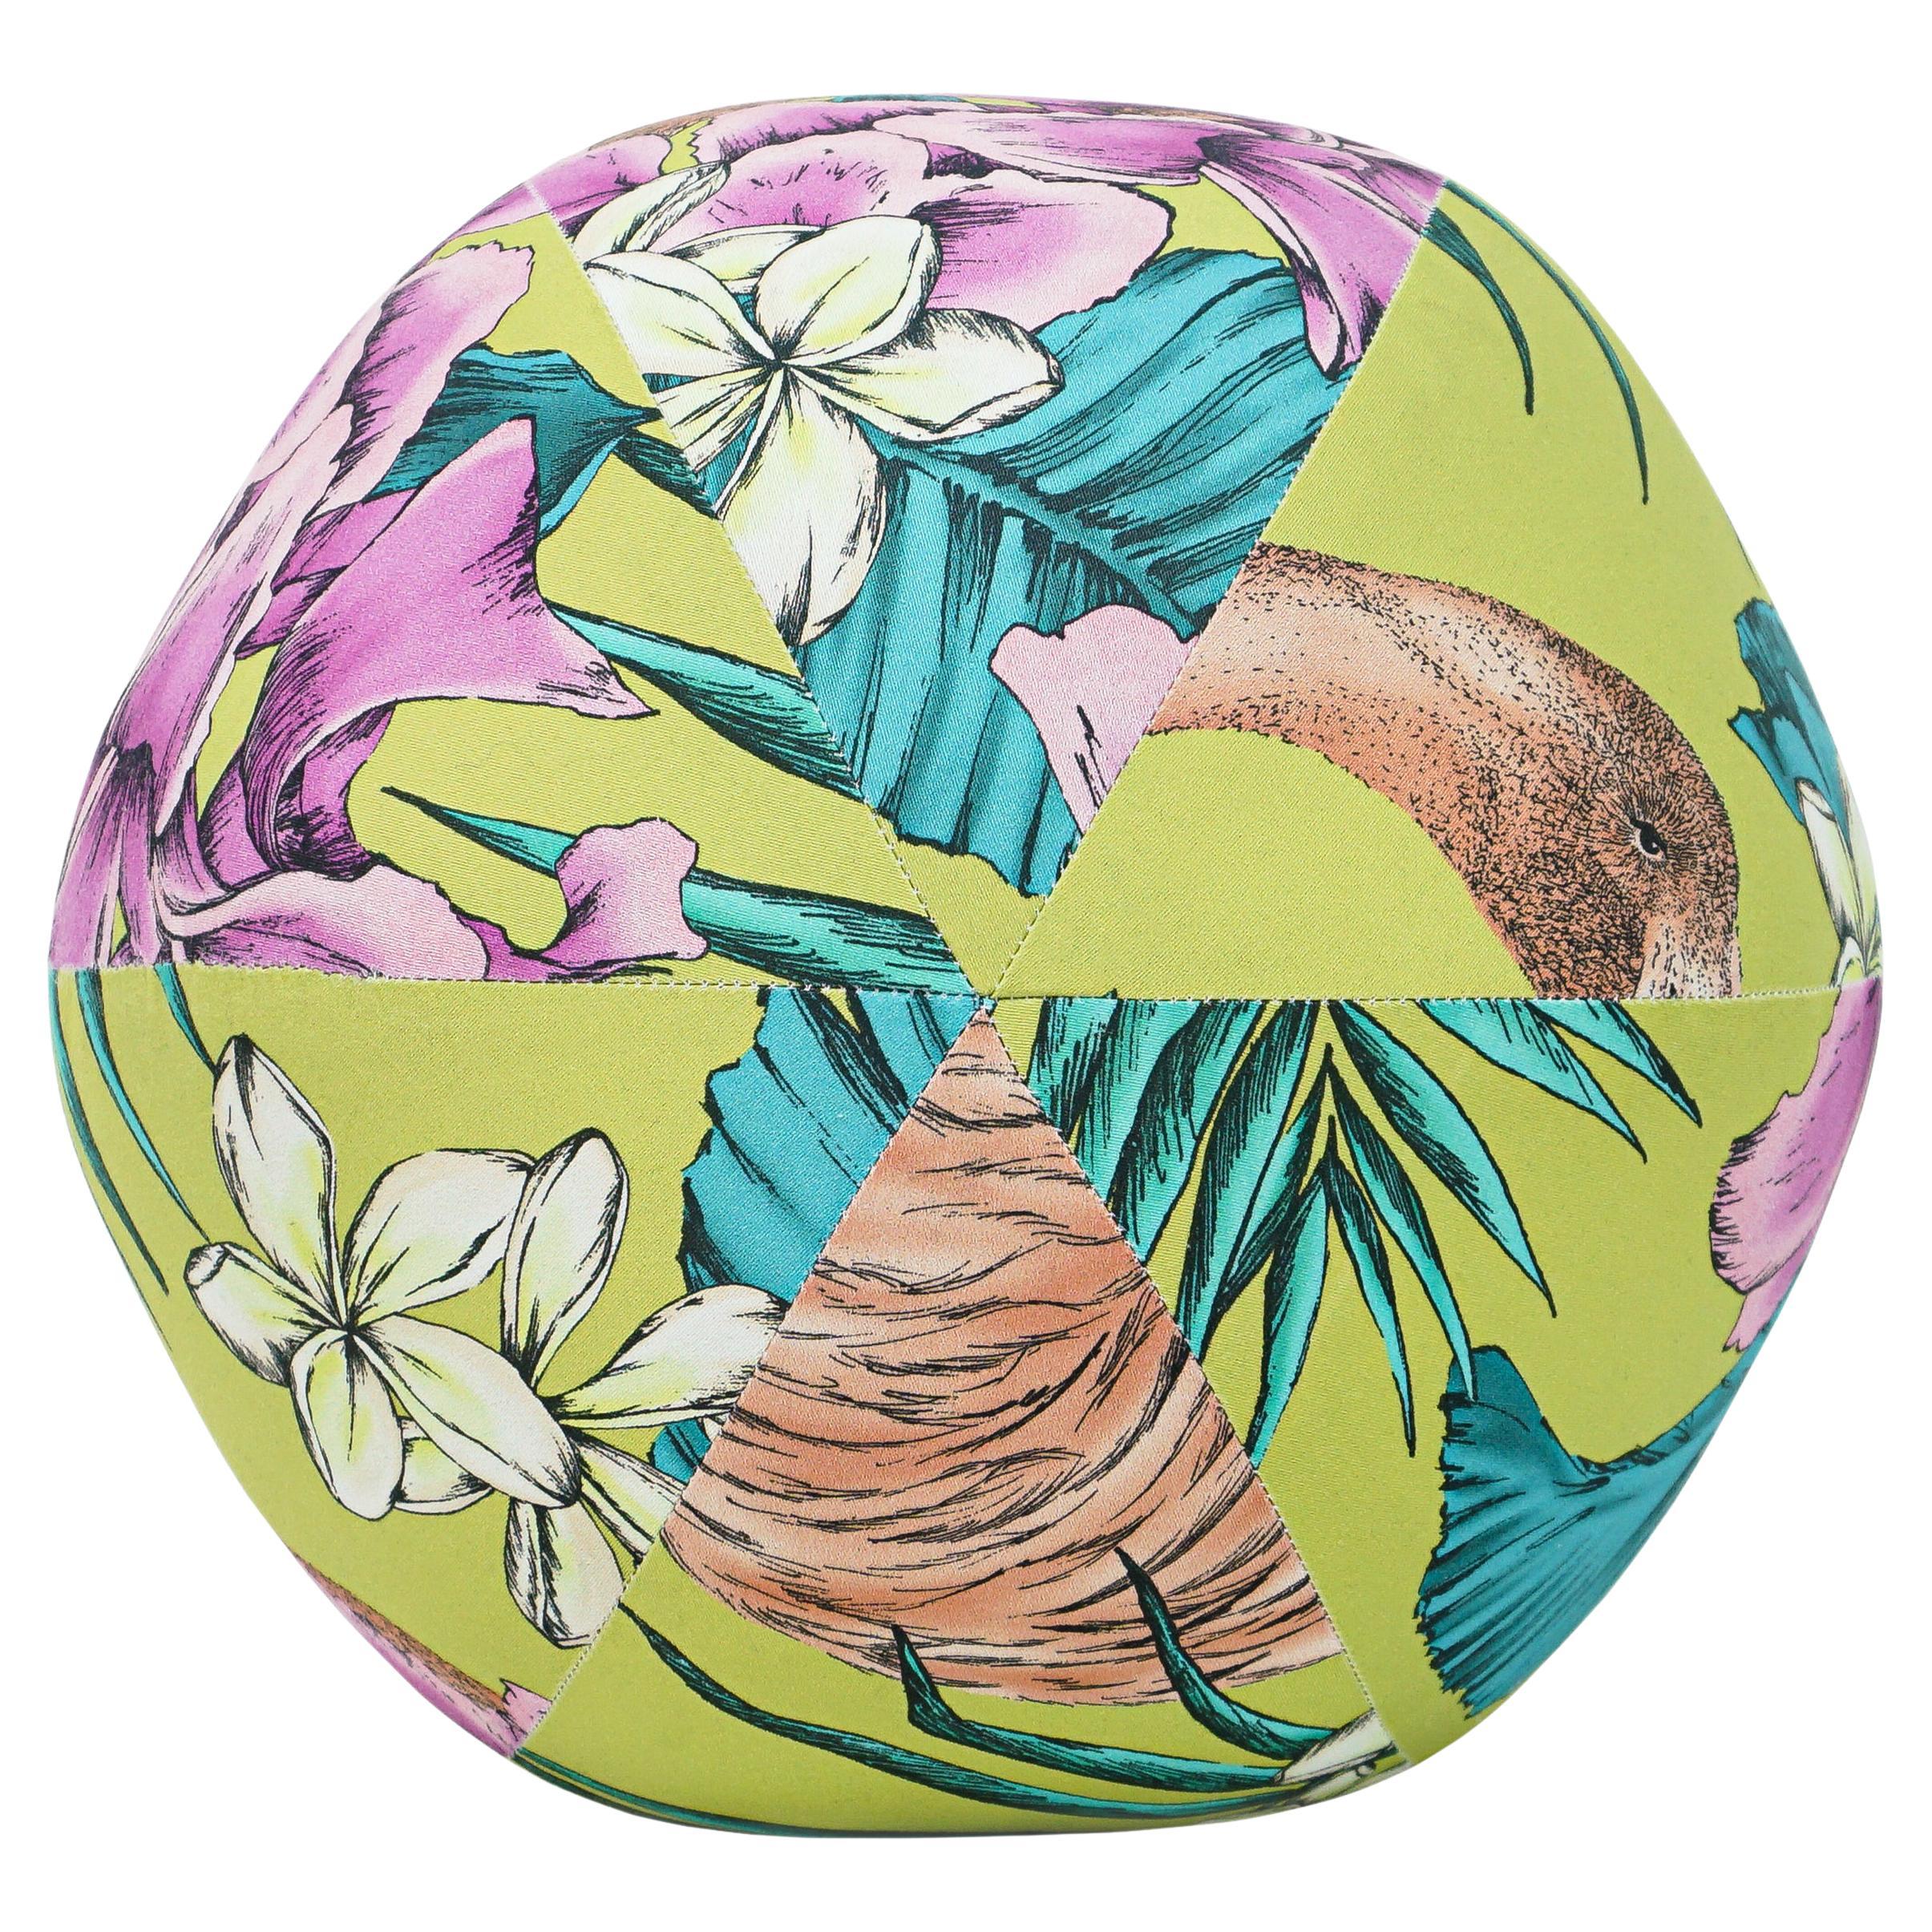 Flamingo-Kugelkissen aus bedruckter Baumwolle mit Matthew Williamson-Druck